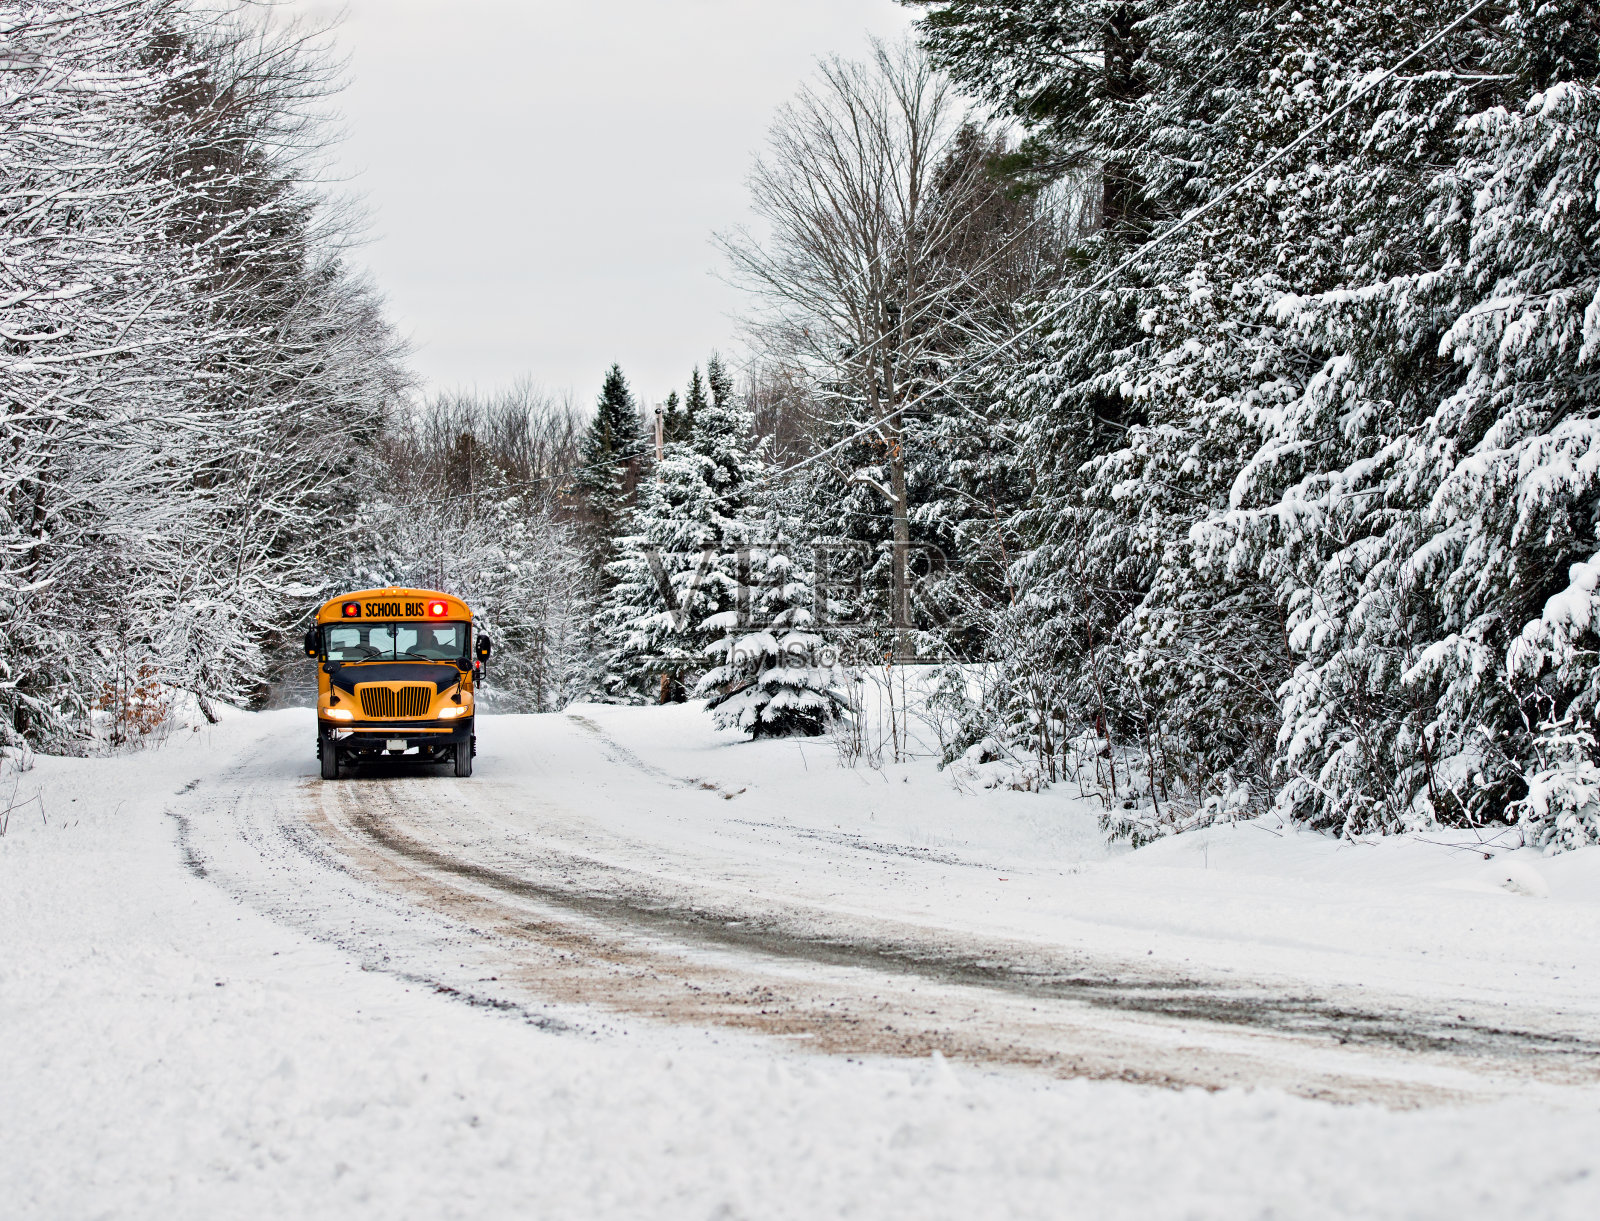 校车行驶在一条被雪覆盖的路上照片摄影图片